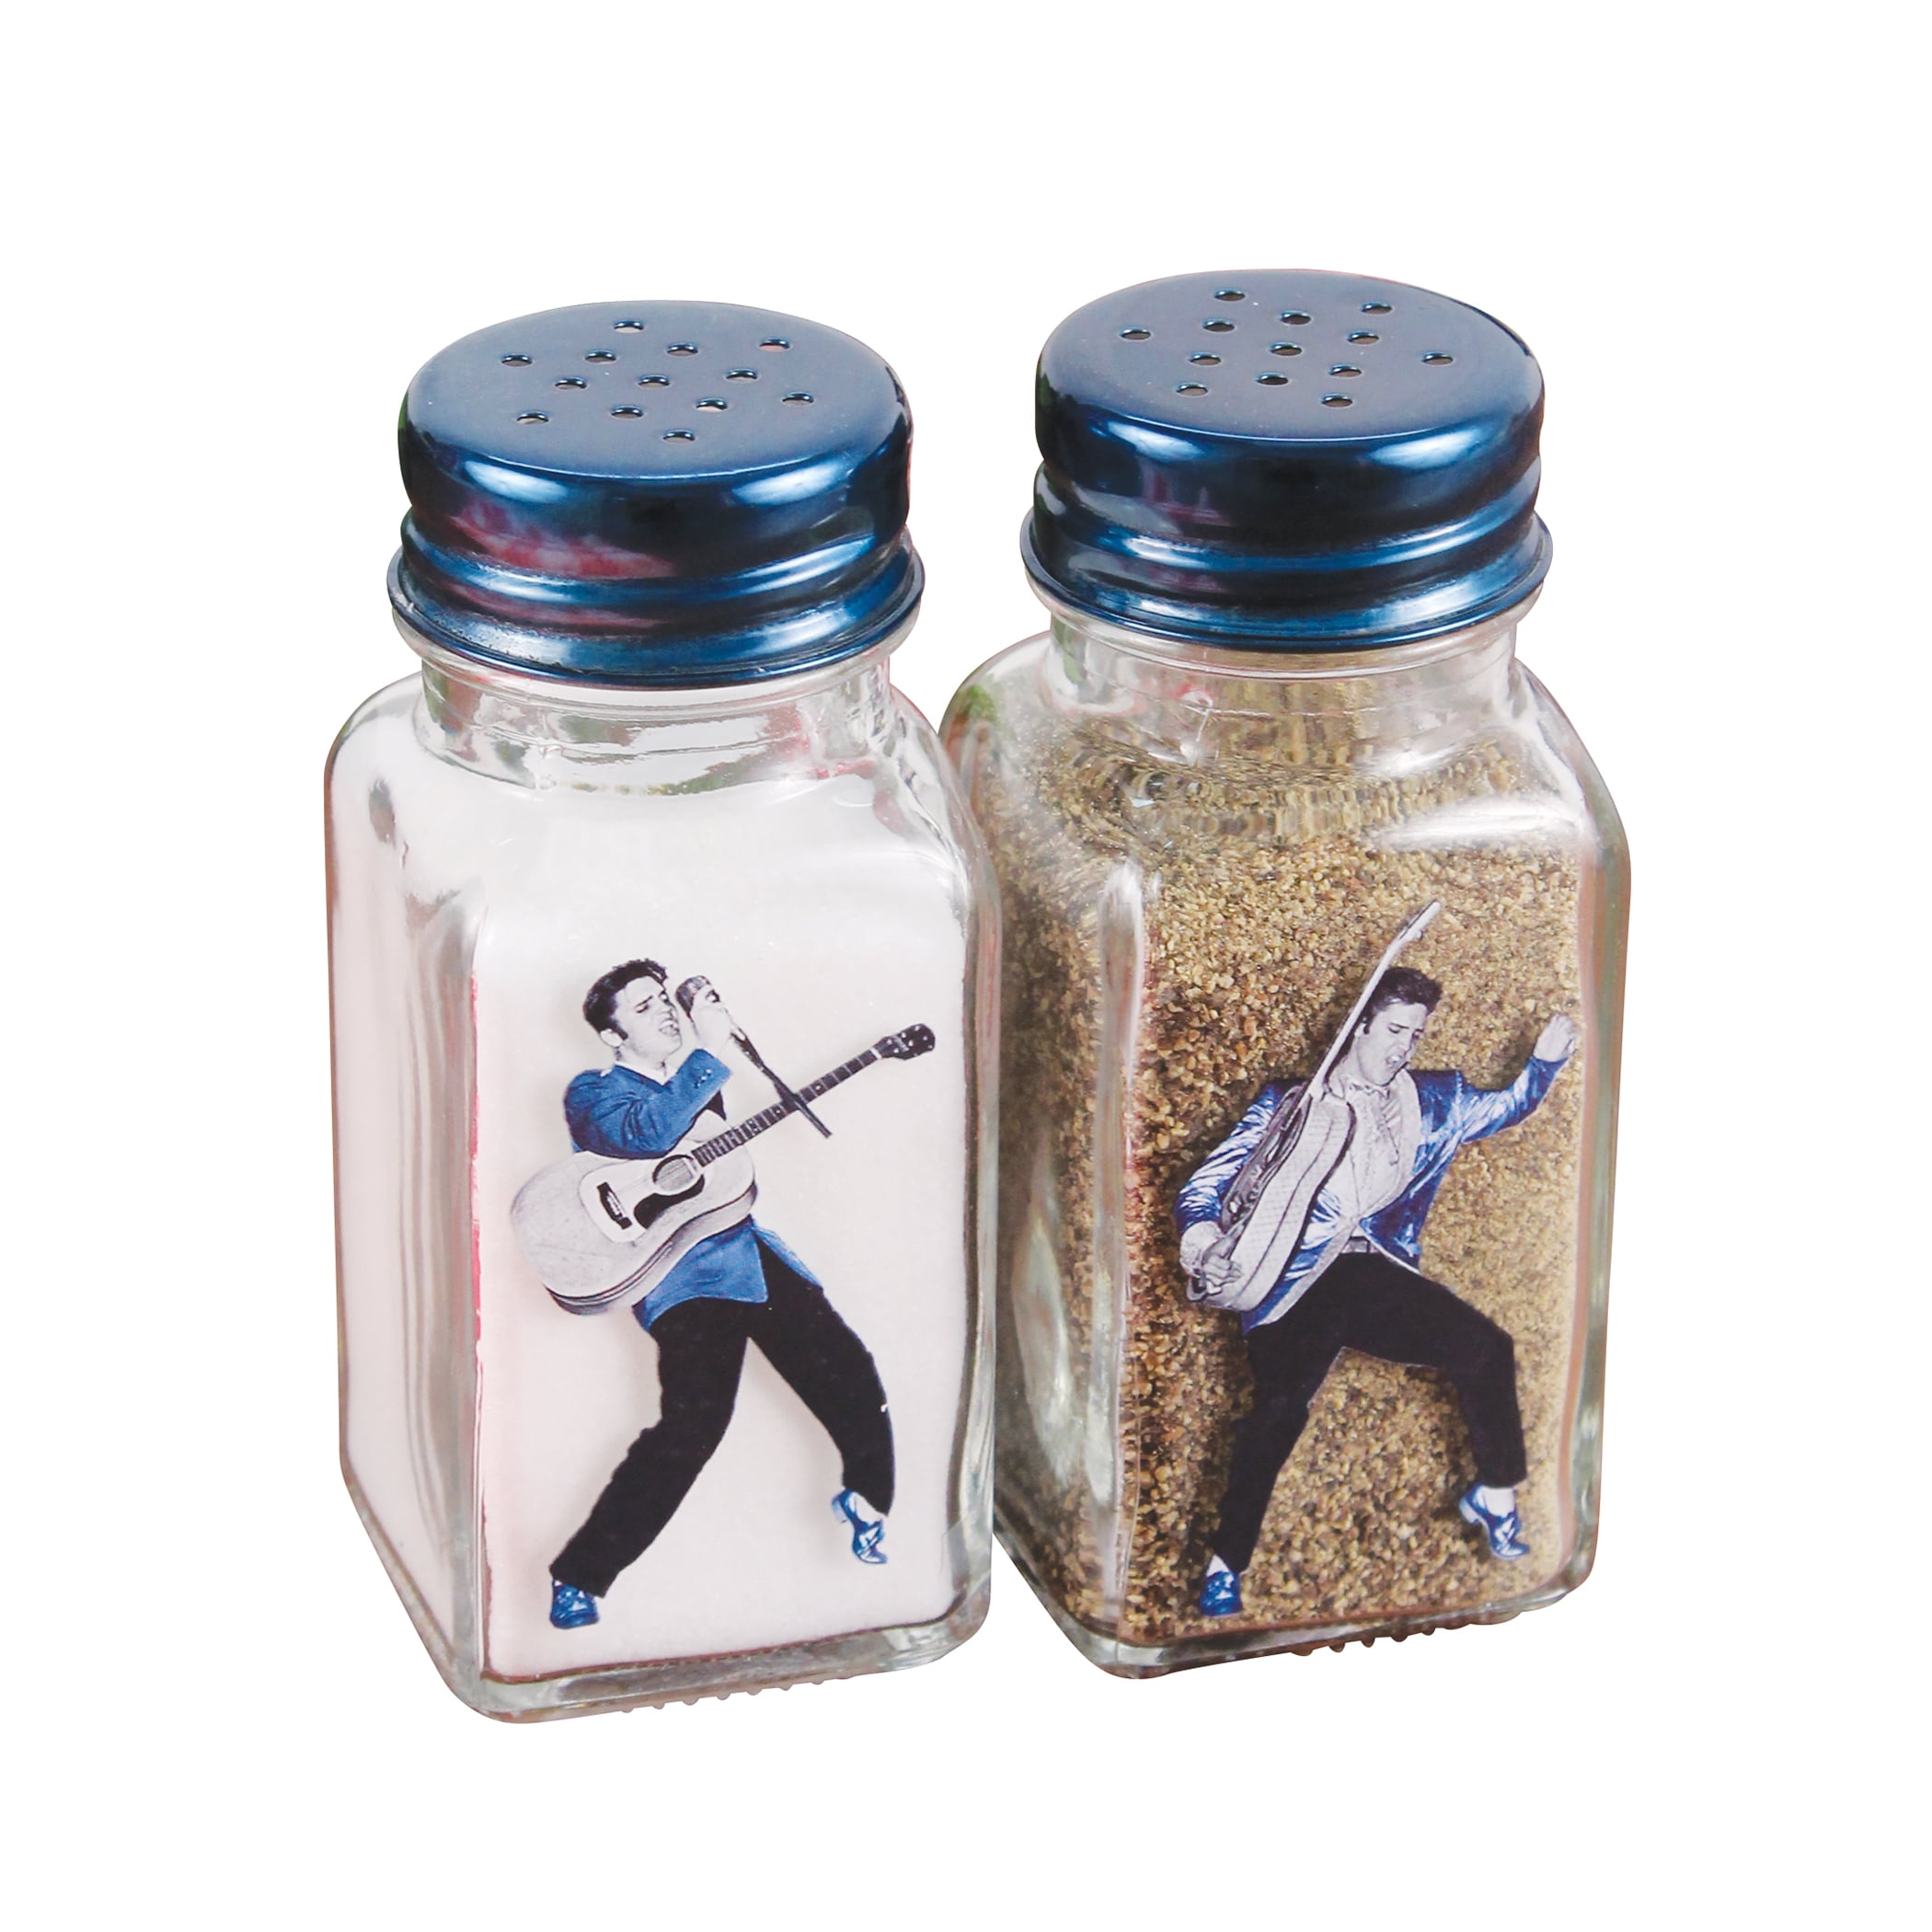 Elvis The King Salt And Pepper Pots 